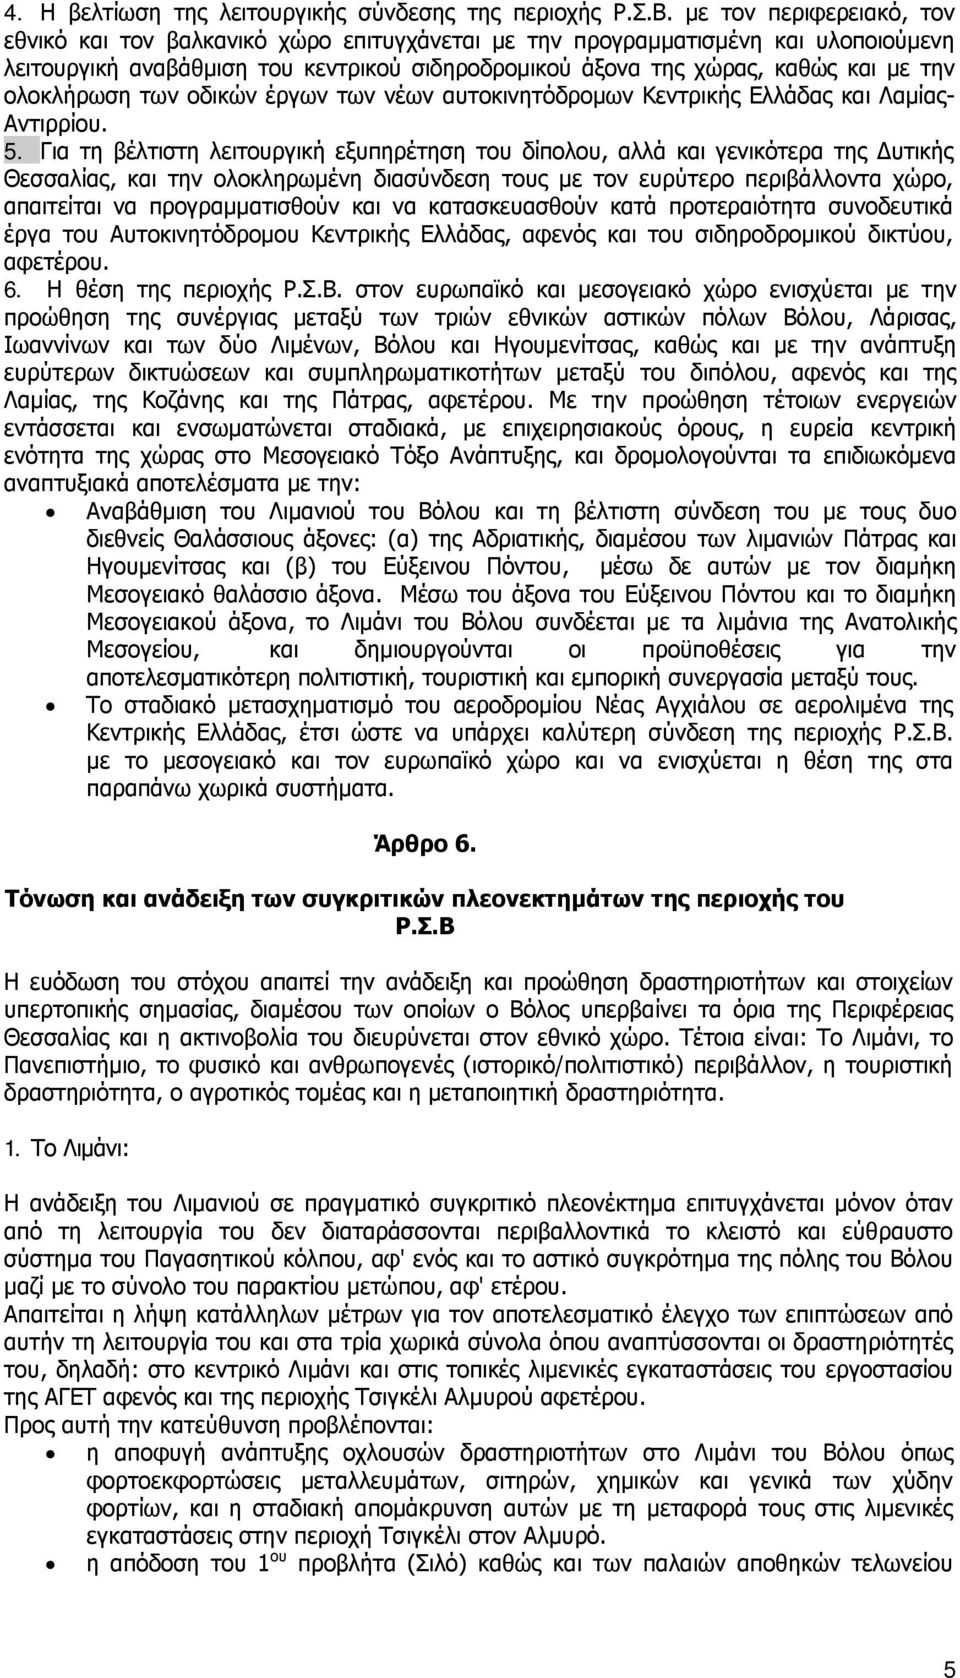 ολοκλήρωση των οδικών έργων των νέων αυτοκινητόδρομων Κεντρικής Ελλάδας και Λαμίας- Αντιρρίου. 5.